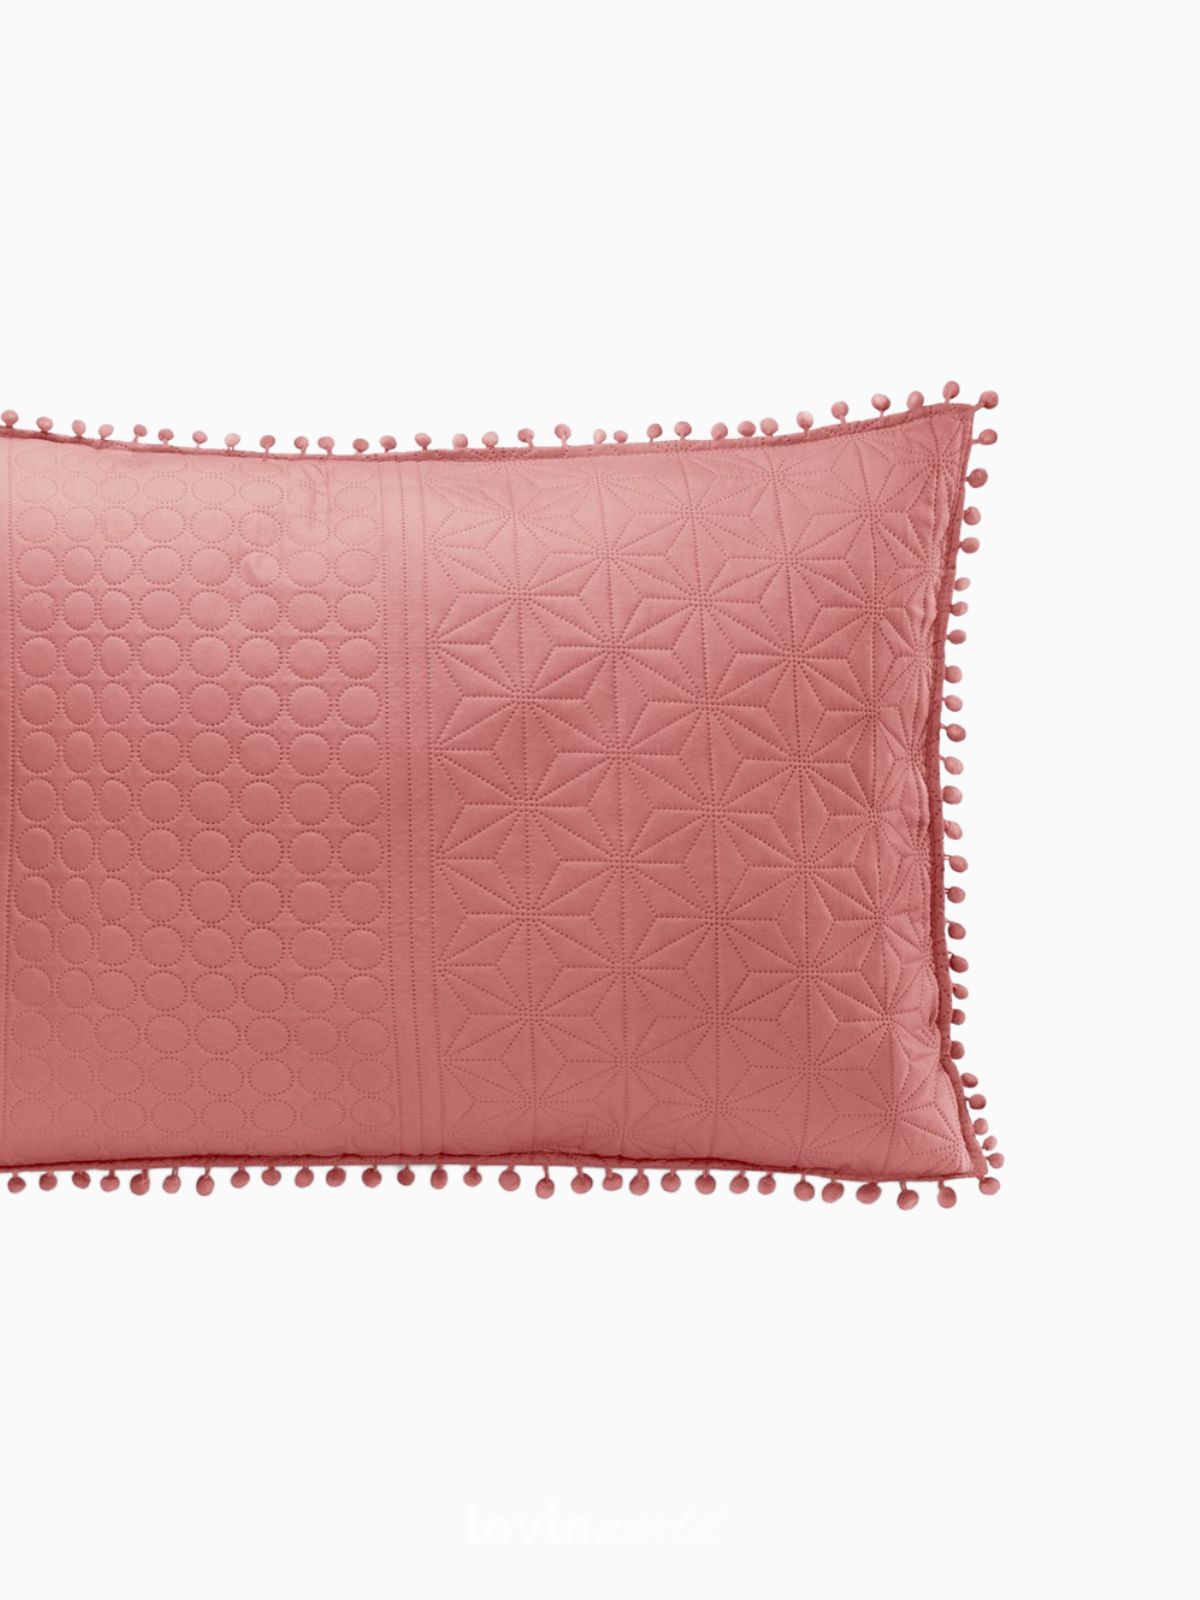 Cuscino decorativo Meadore in colore rosso 50x70 cm.-4